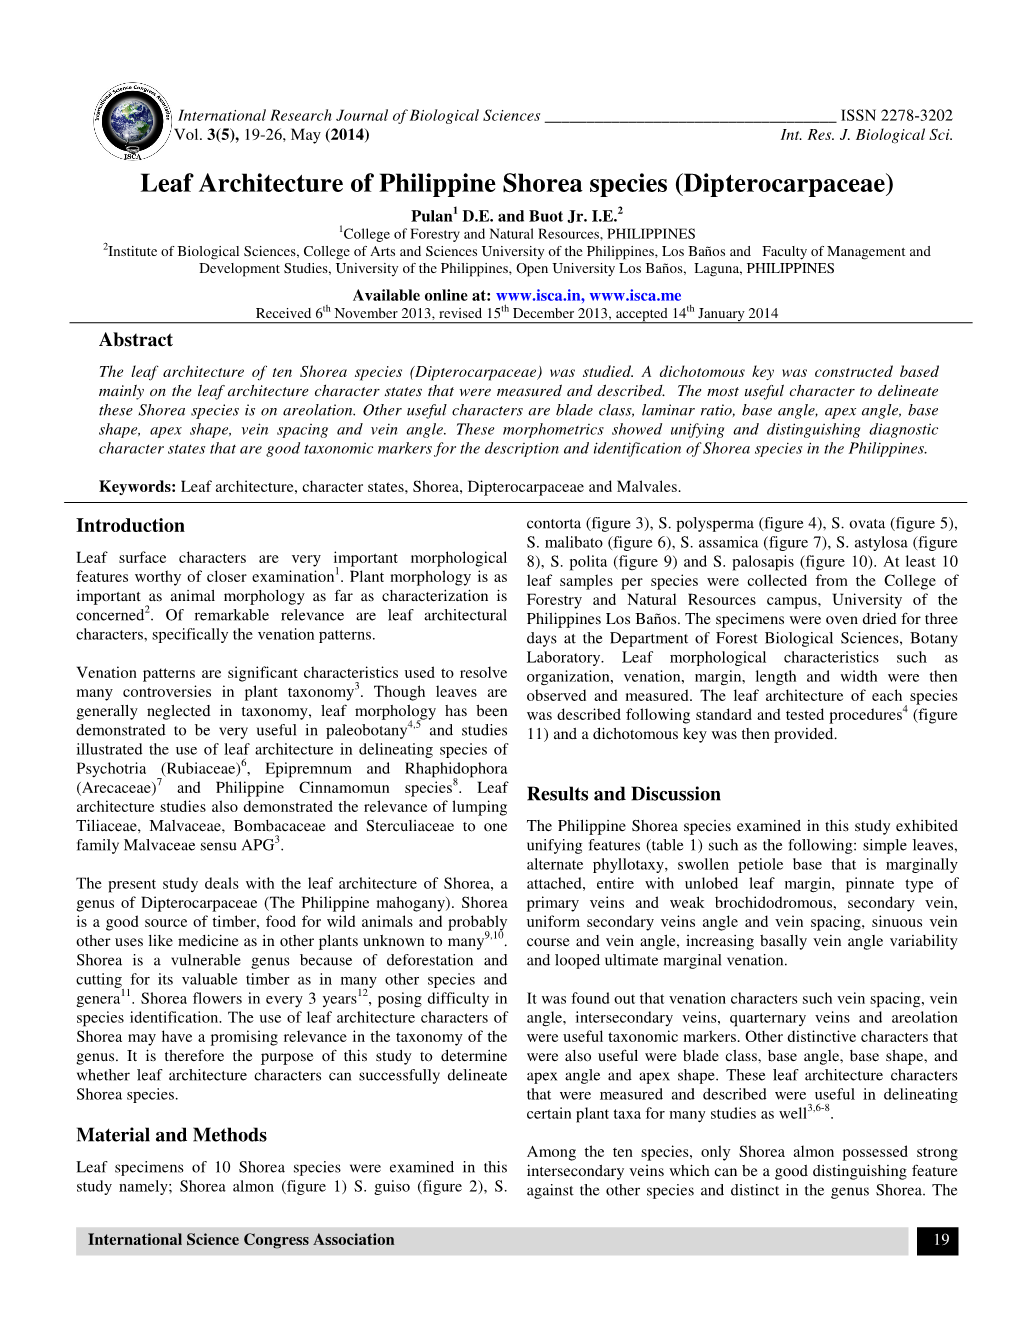 Leaf Architecture of Philippine Shorea Species (Dipterocarpaceae) Pulan 1 D.E